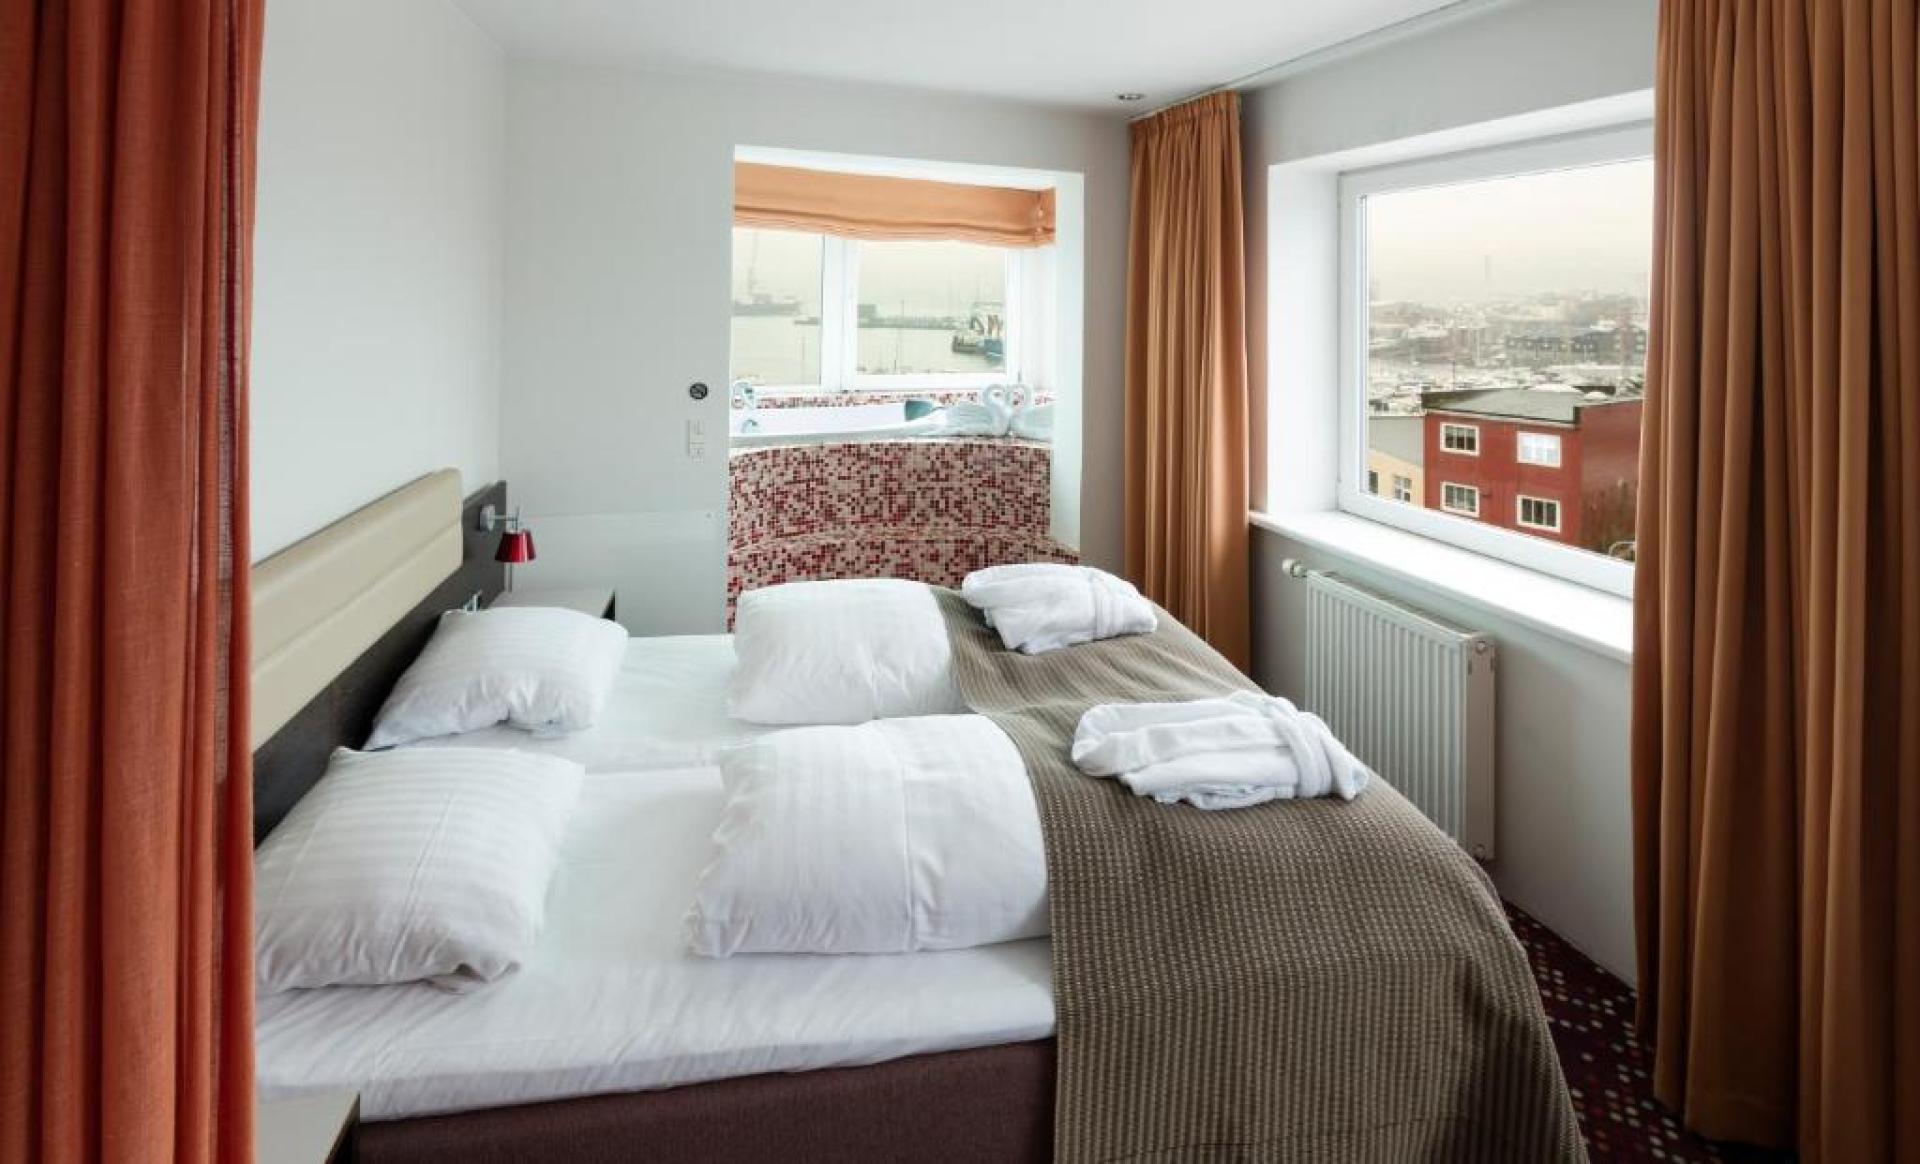 Hotel Tórshavn, is located in downtown Tórshavn in the Faroe Islands. 